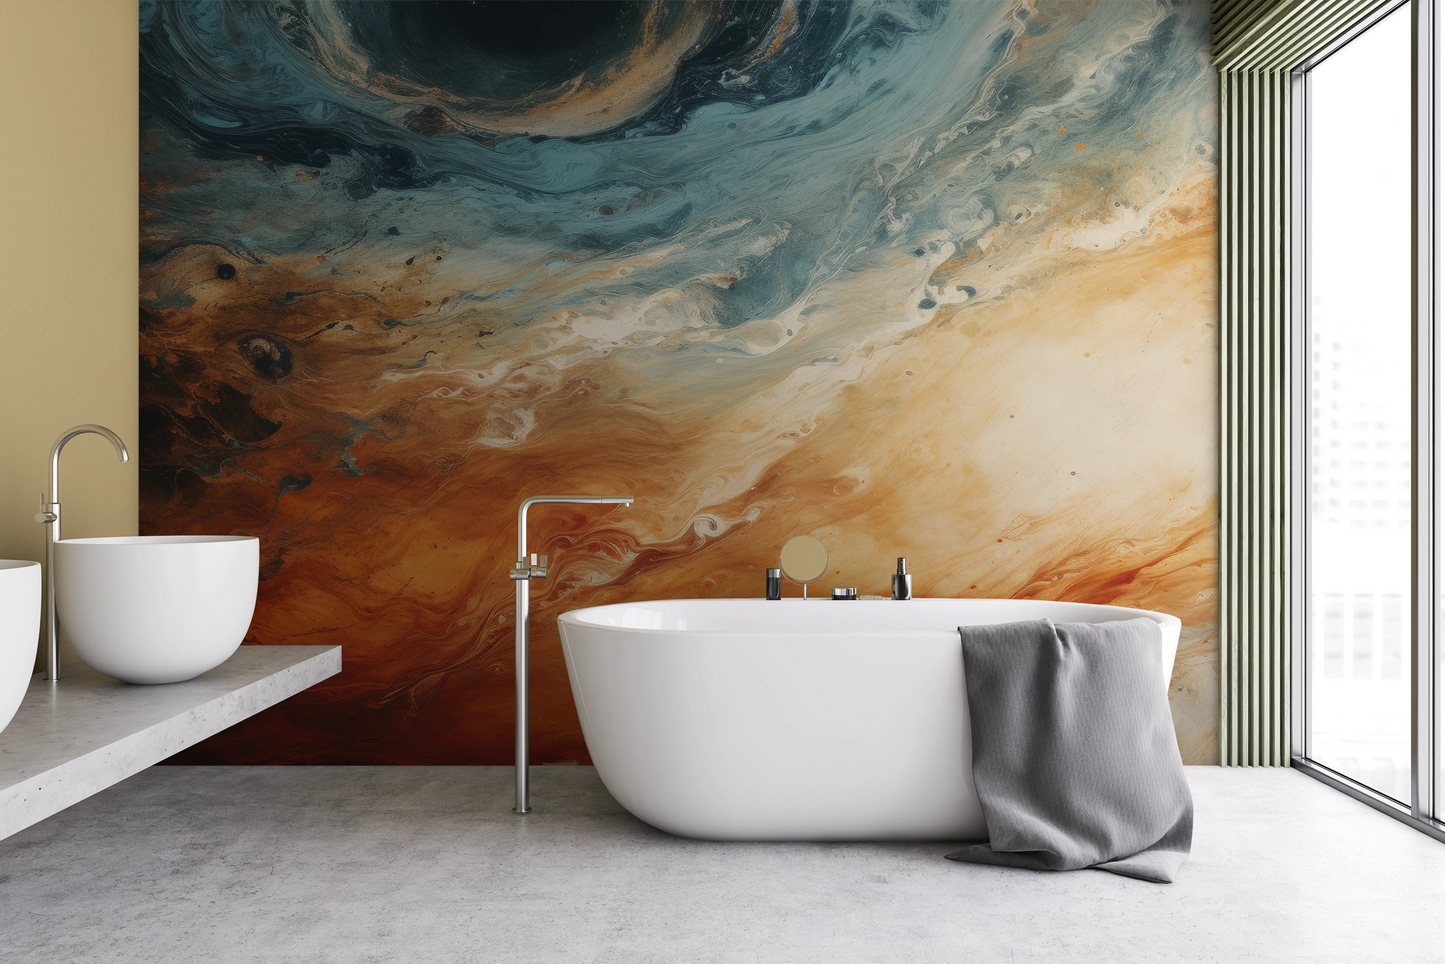 Fototapeta malowana o nazwie Jovian Storm pokazana w aranżacji wnętrza.